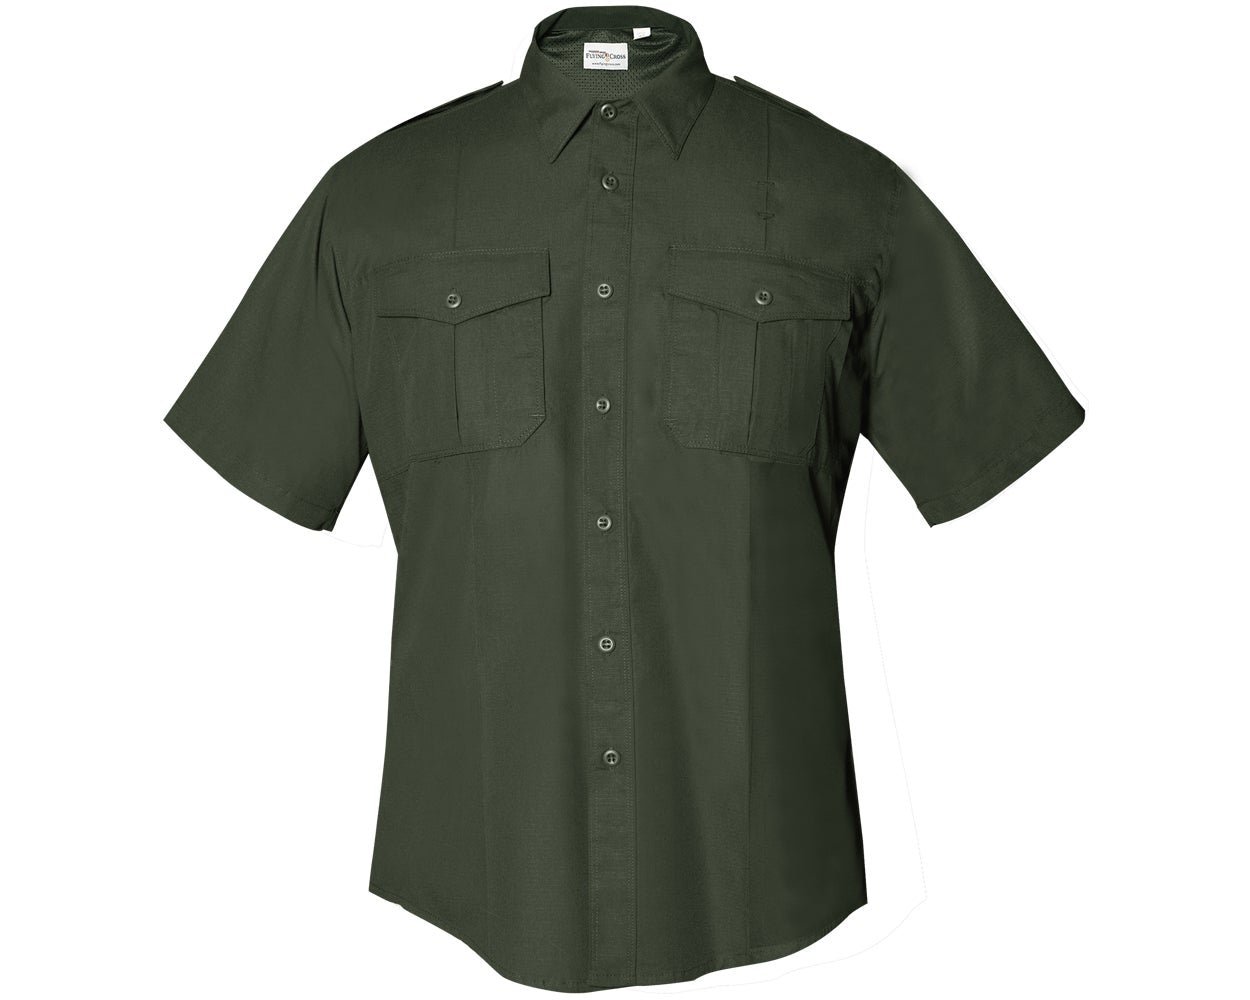 Flying Cross FX STAT Men's Class B Short Sleeve Shirt FX7100 - OD Green, XS